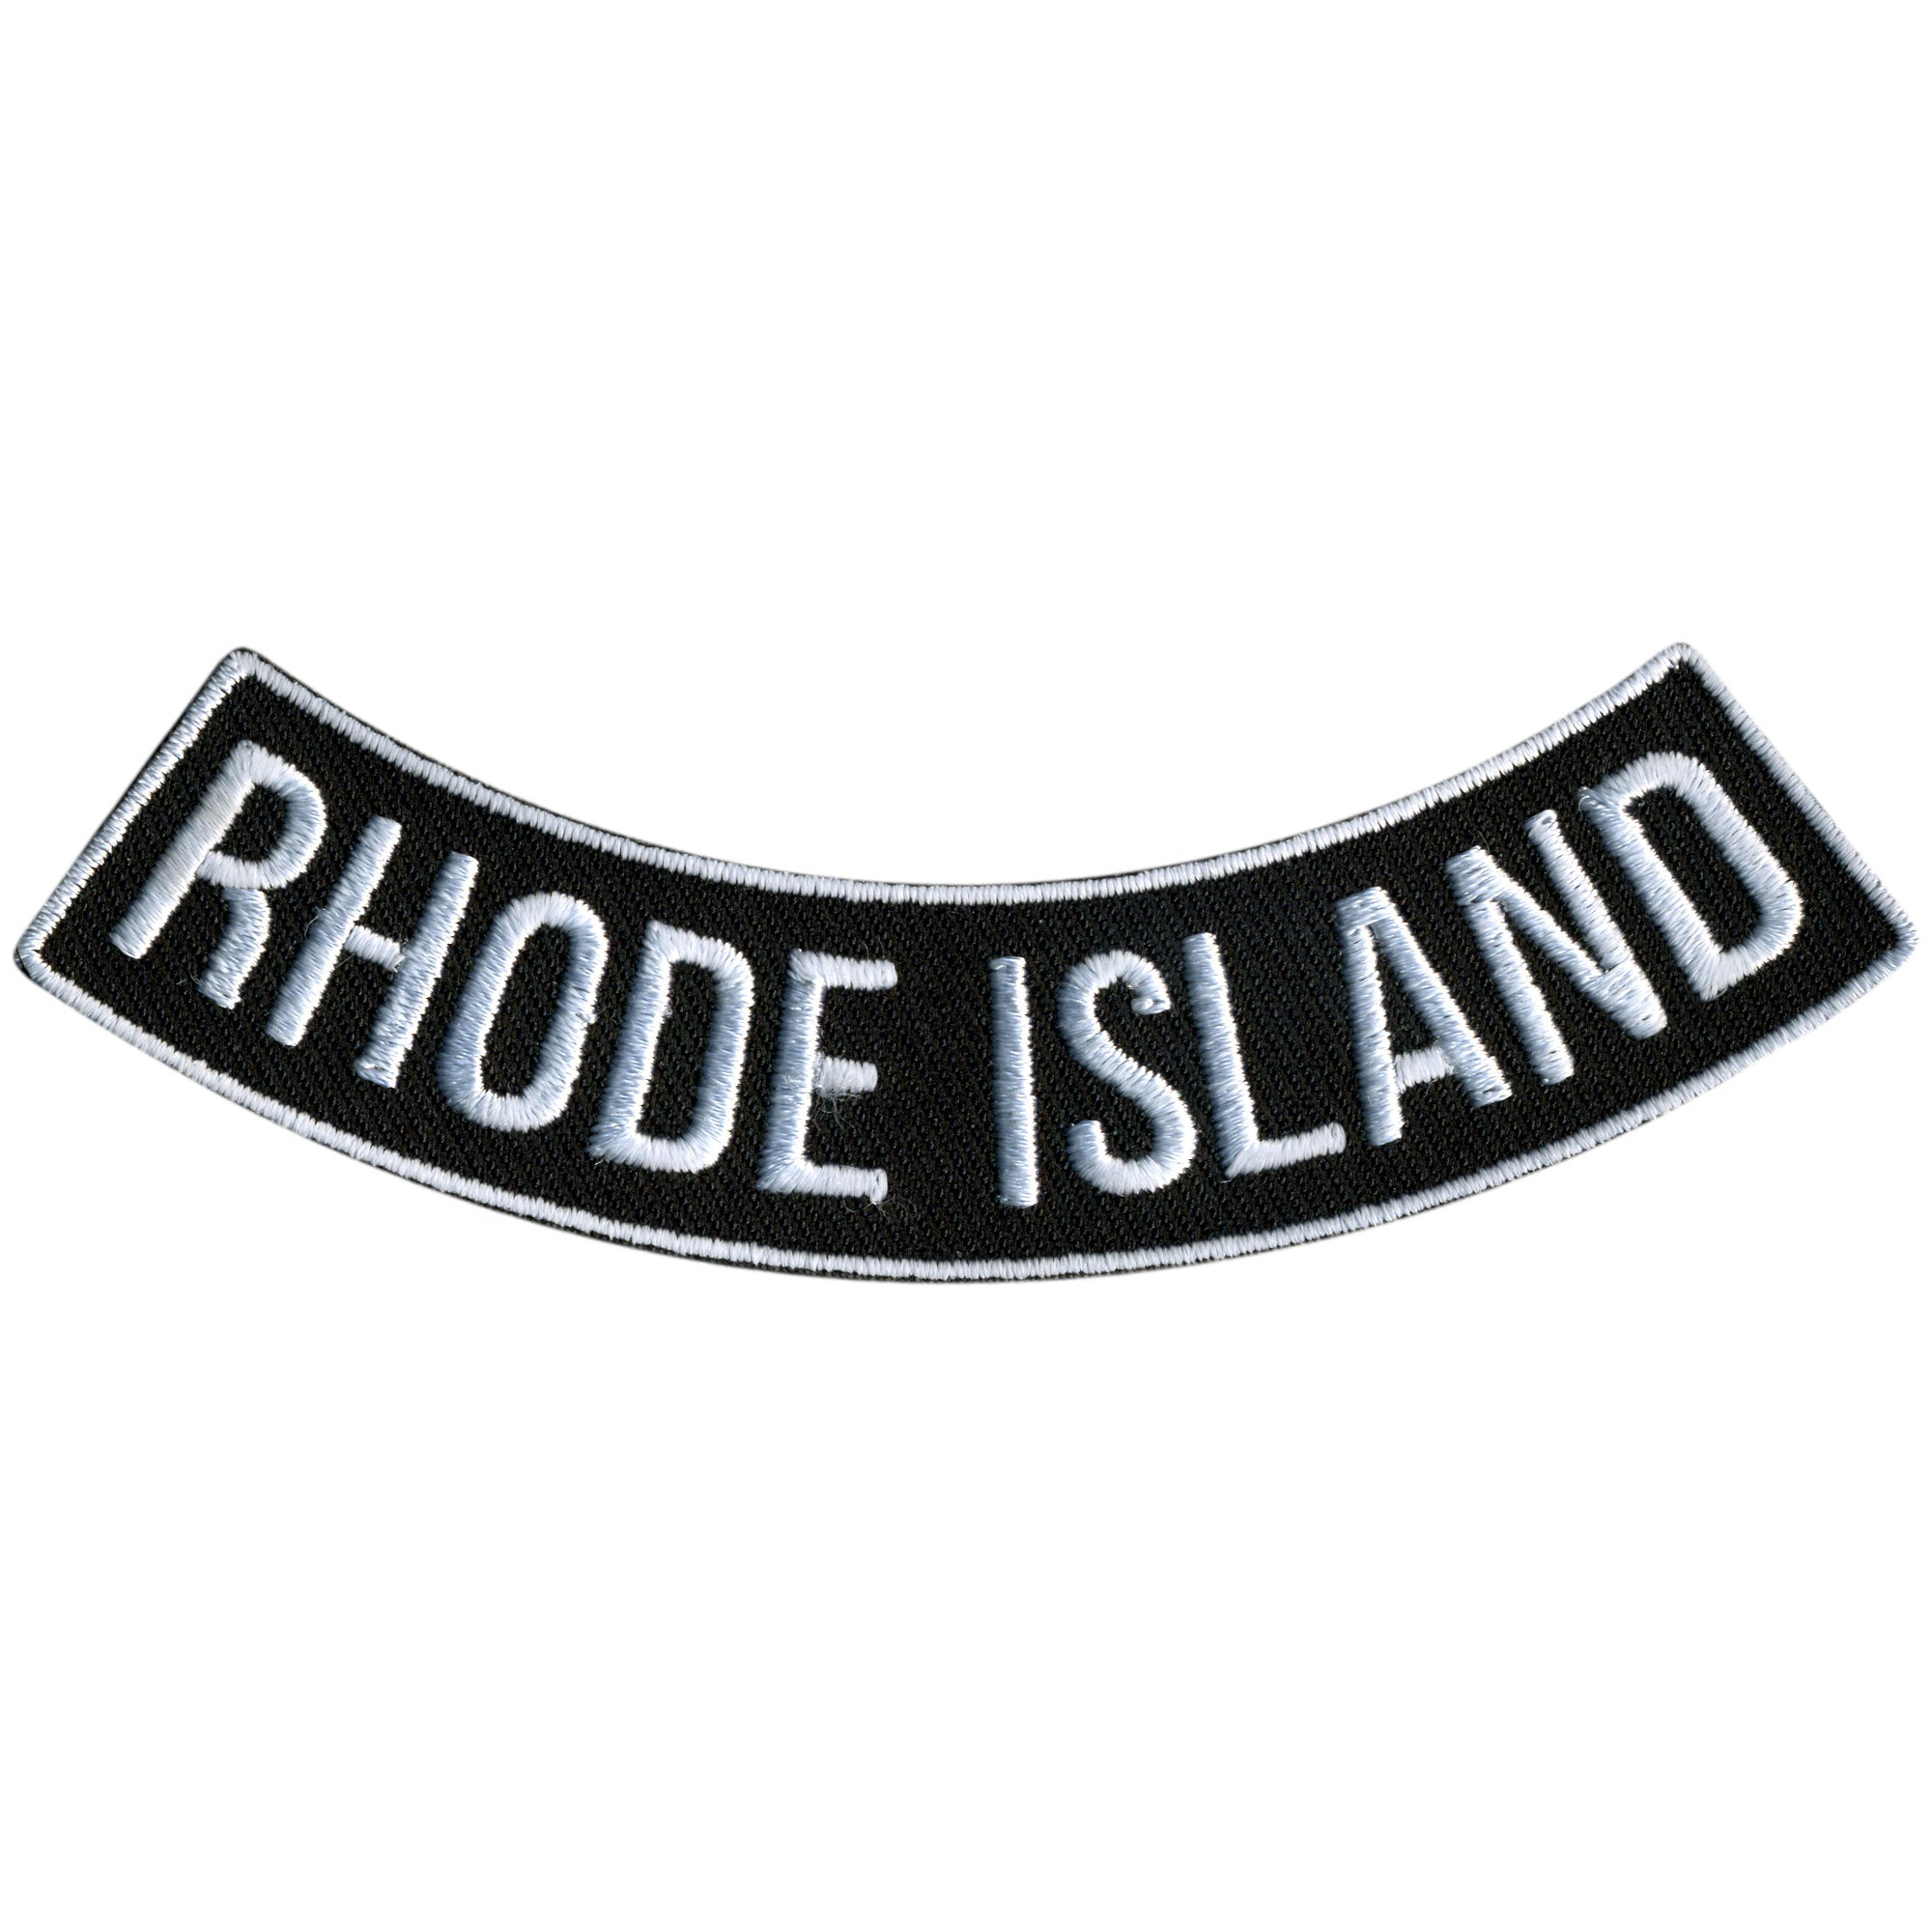 Hot Leathers Rhode Island 4” X 1” Bottom Rocker Patch